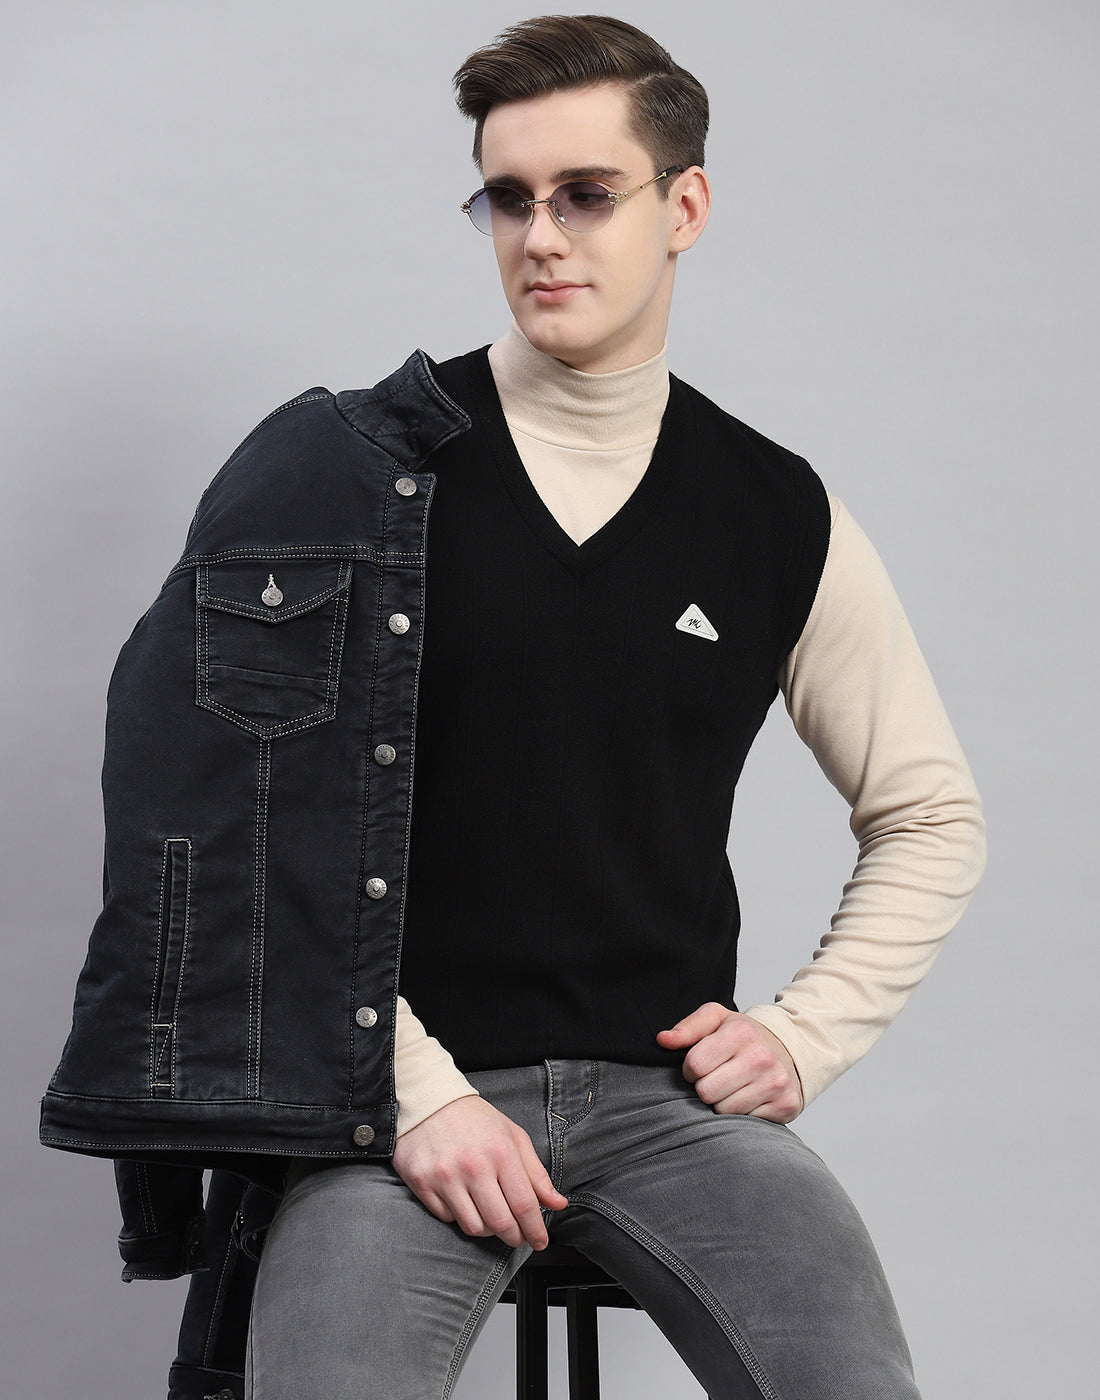 Men Black Solid V Neck Sleeveless Sweater